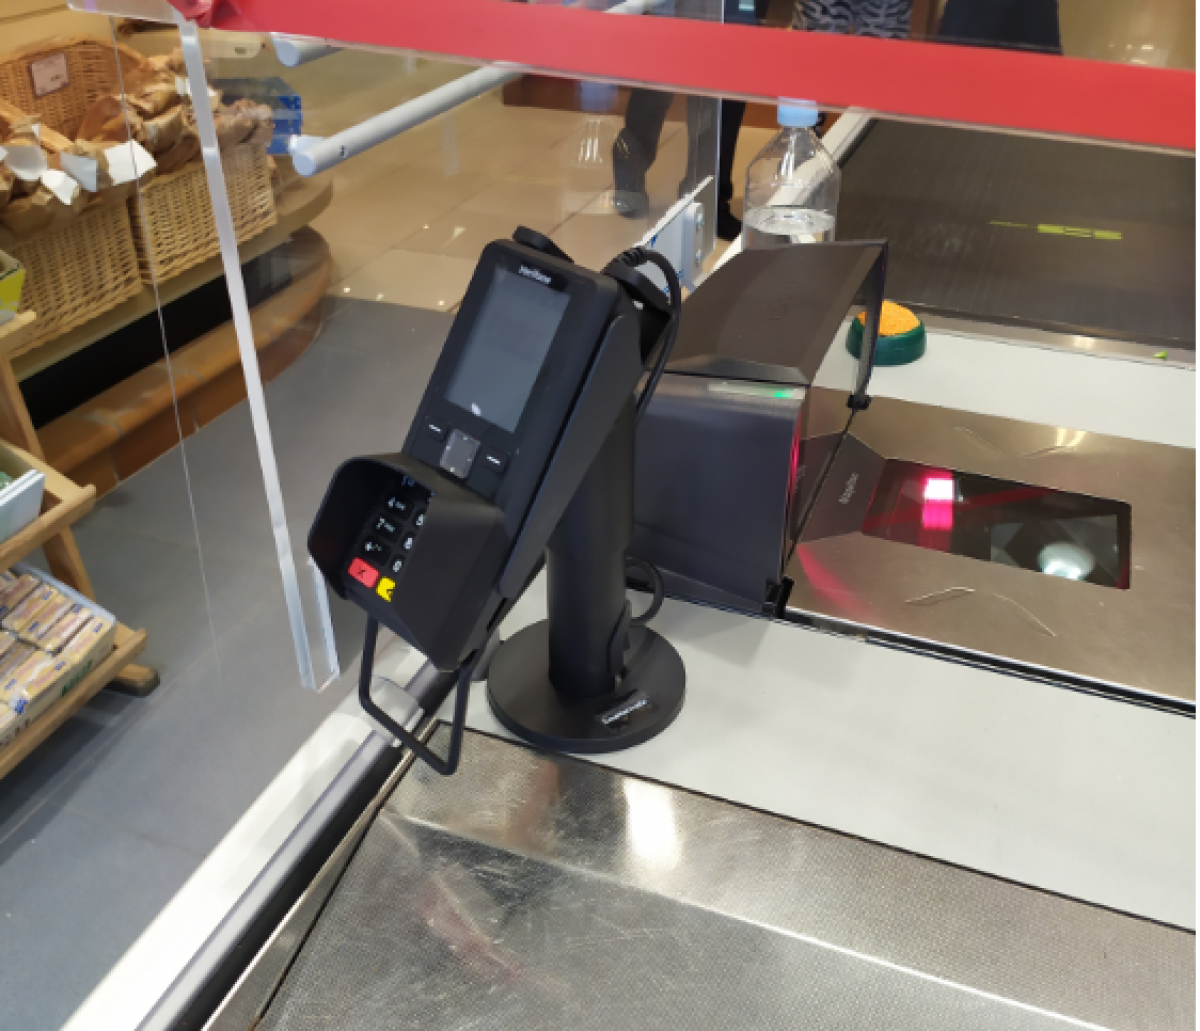 Supermercados Froiz utiliza nuestro soporte para datáfono y cajon portamonedas de abertura vertical